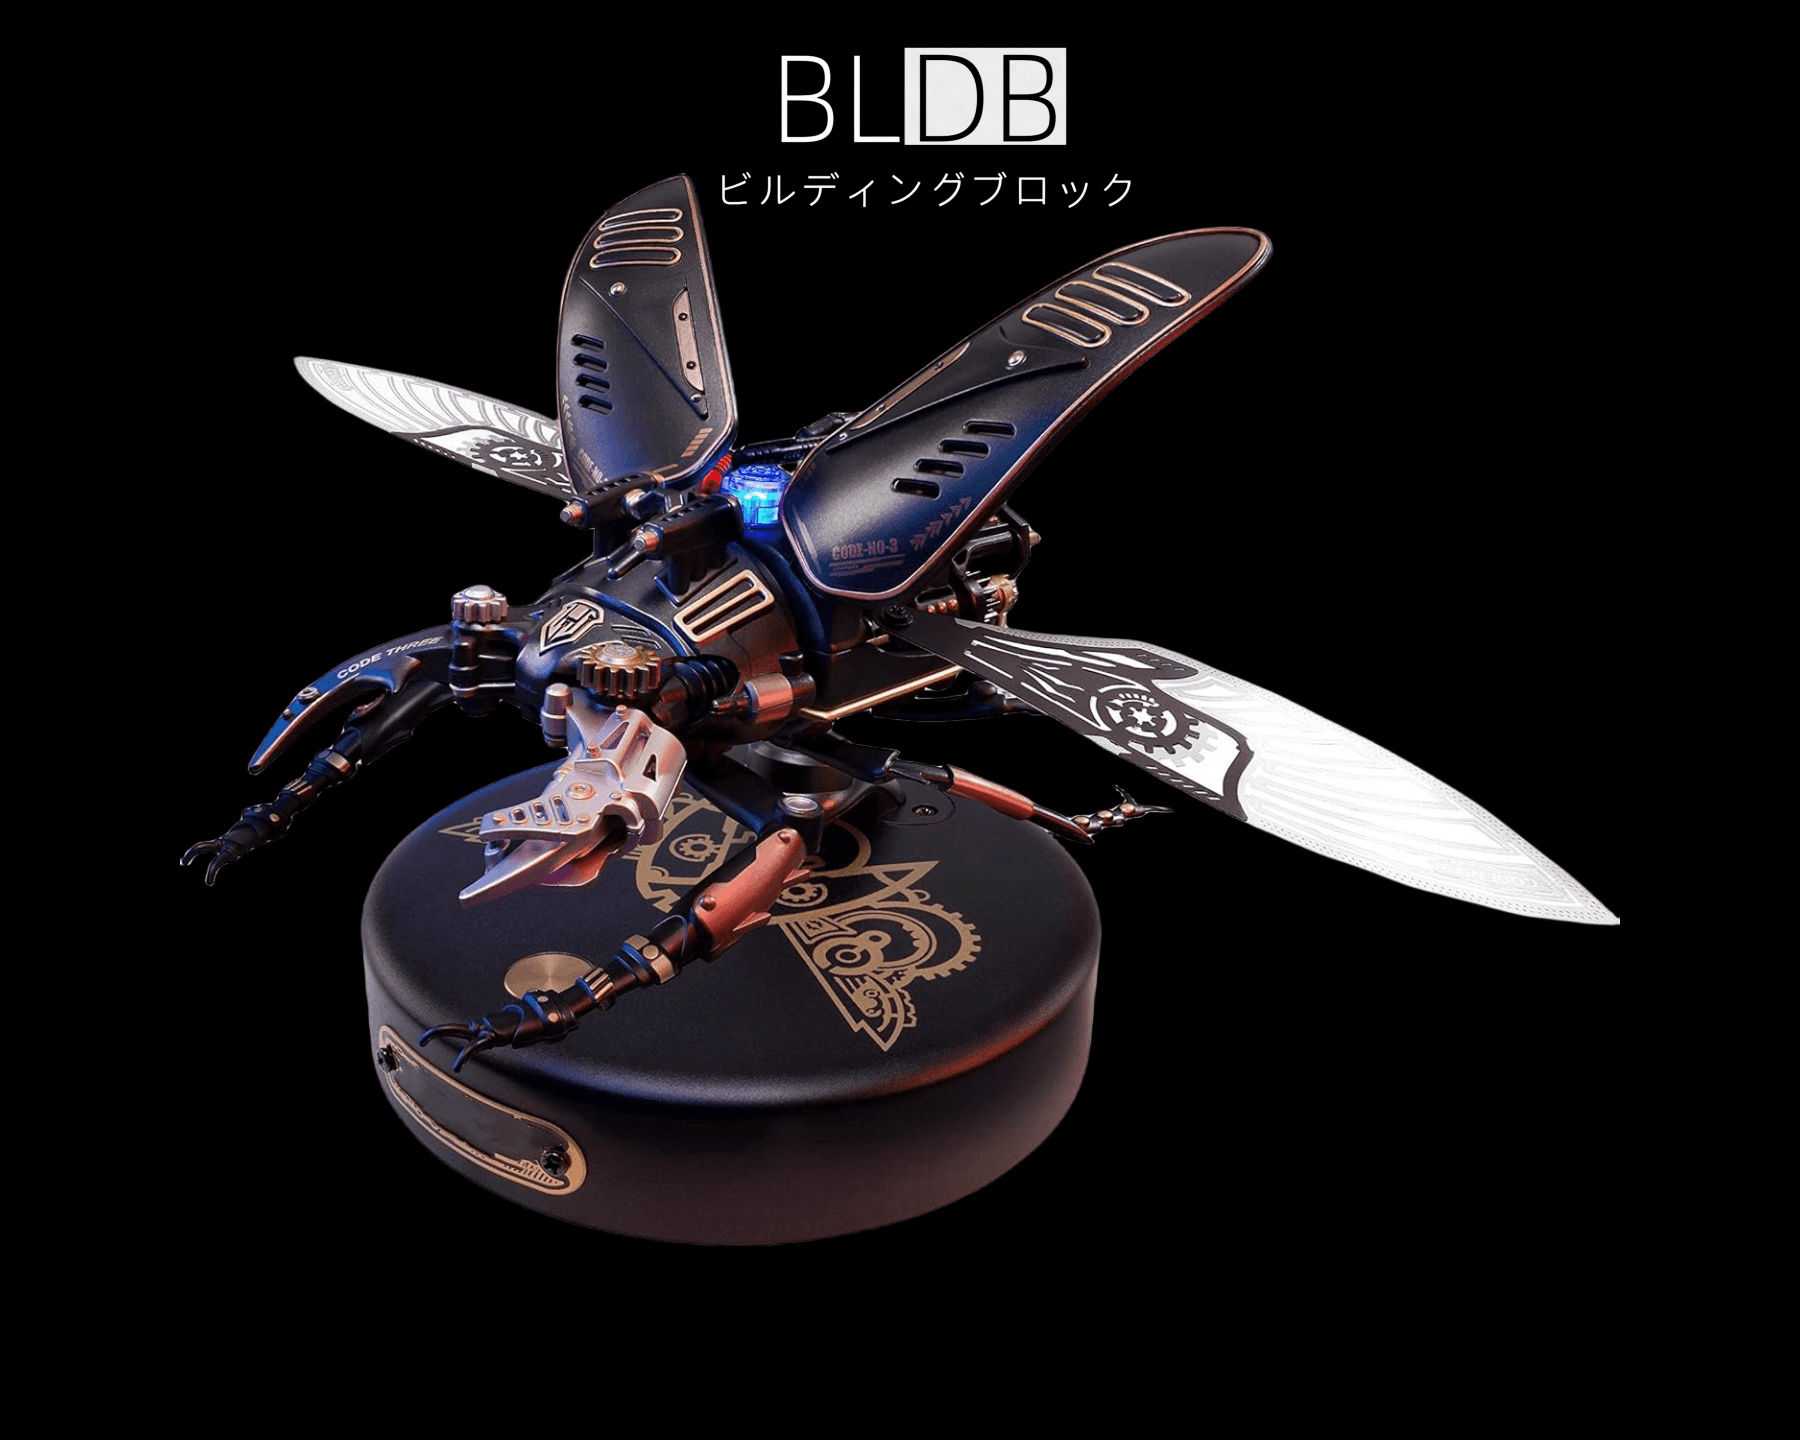 立体 パズル 3D メタル パズルモデル DIY金属昆虫モデル プラモデル 